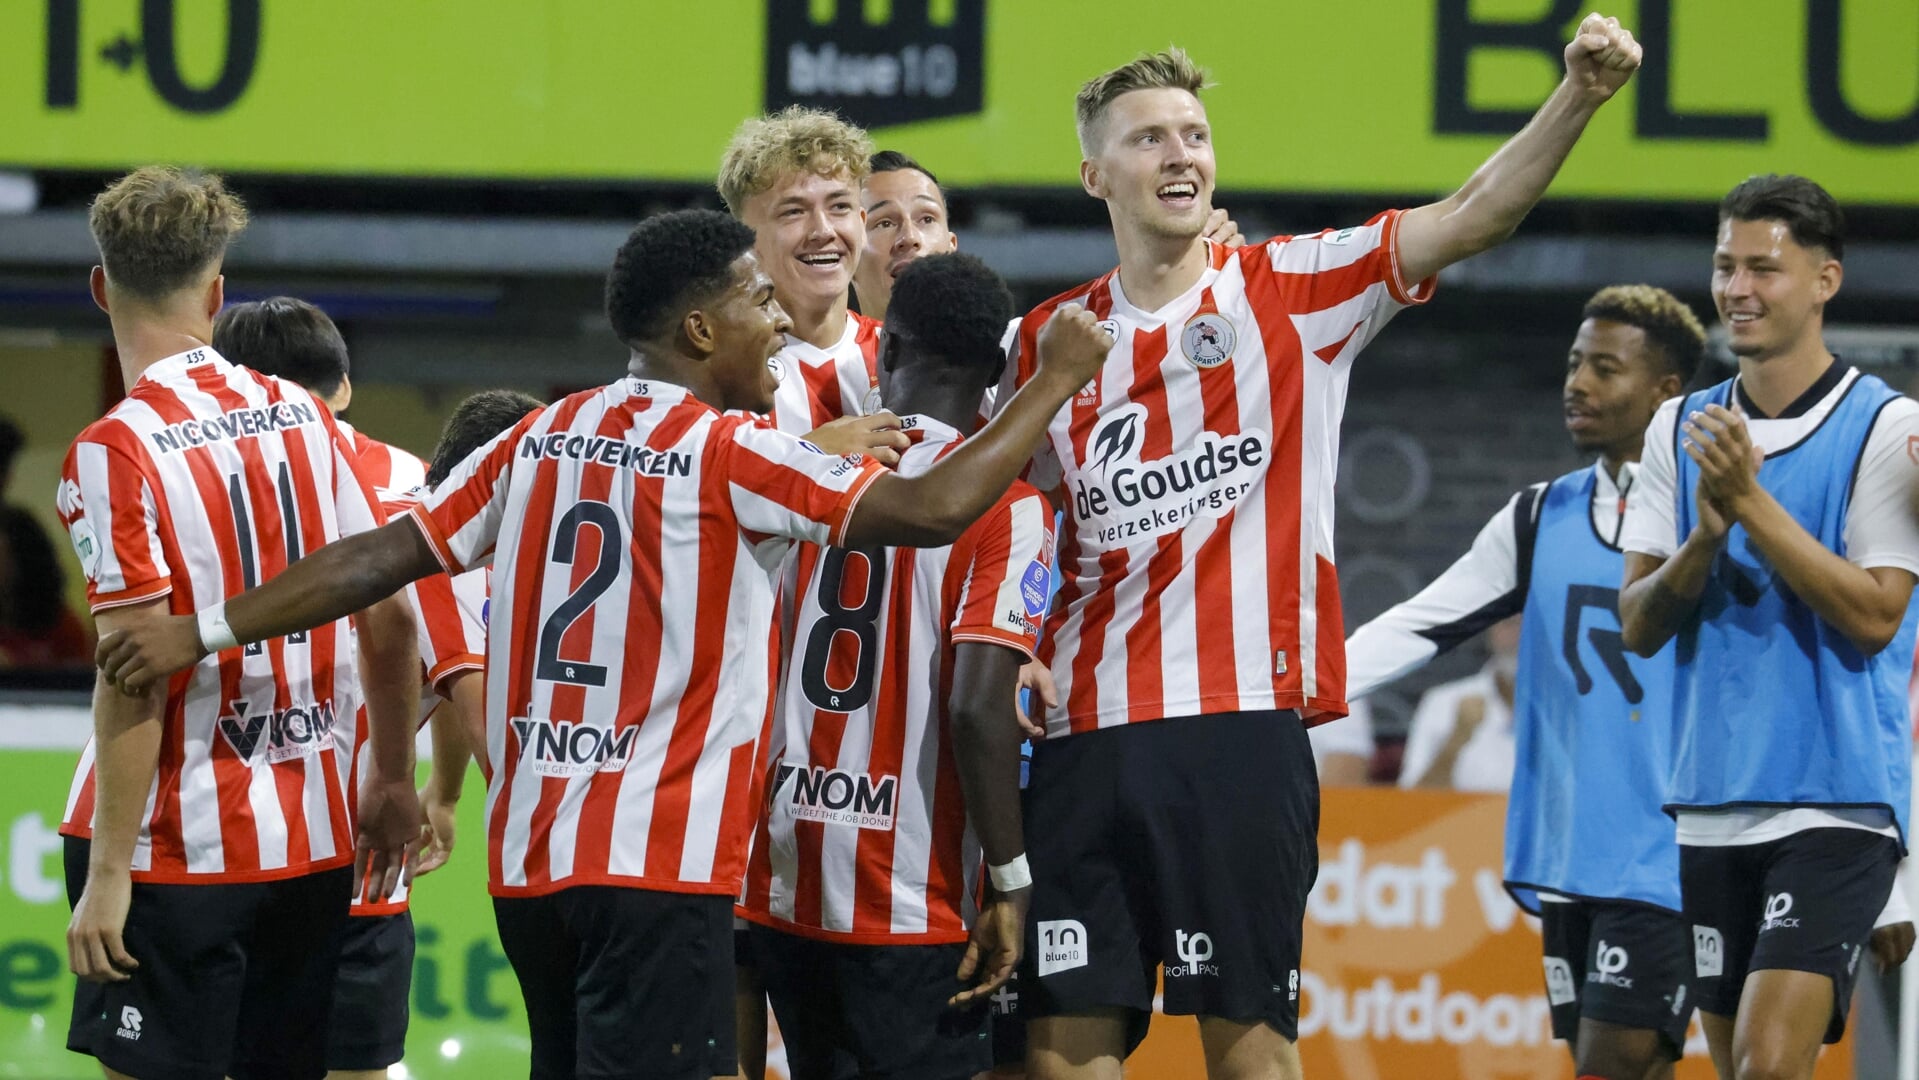 Maak kans op kaarten voor de wedstrijd Sparta - Feyenoord die wordt gespeeld op zondag 2 april.